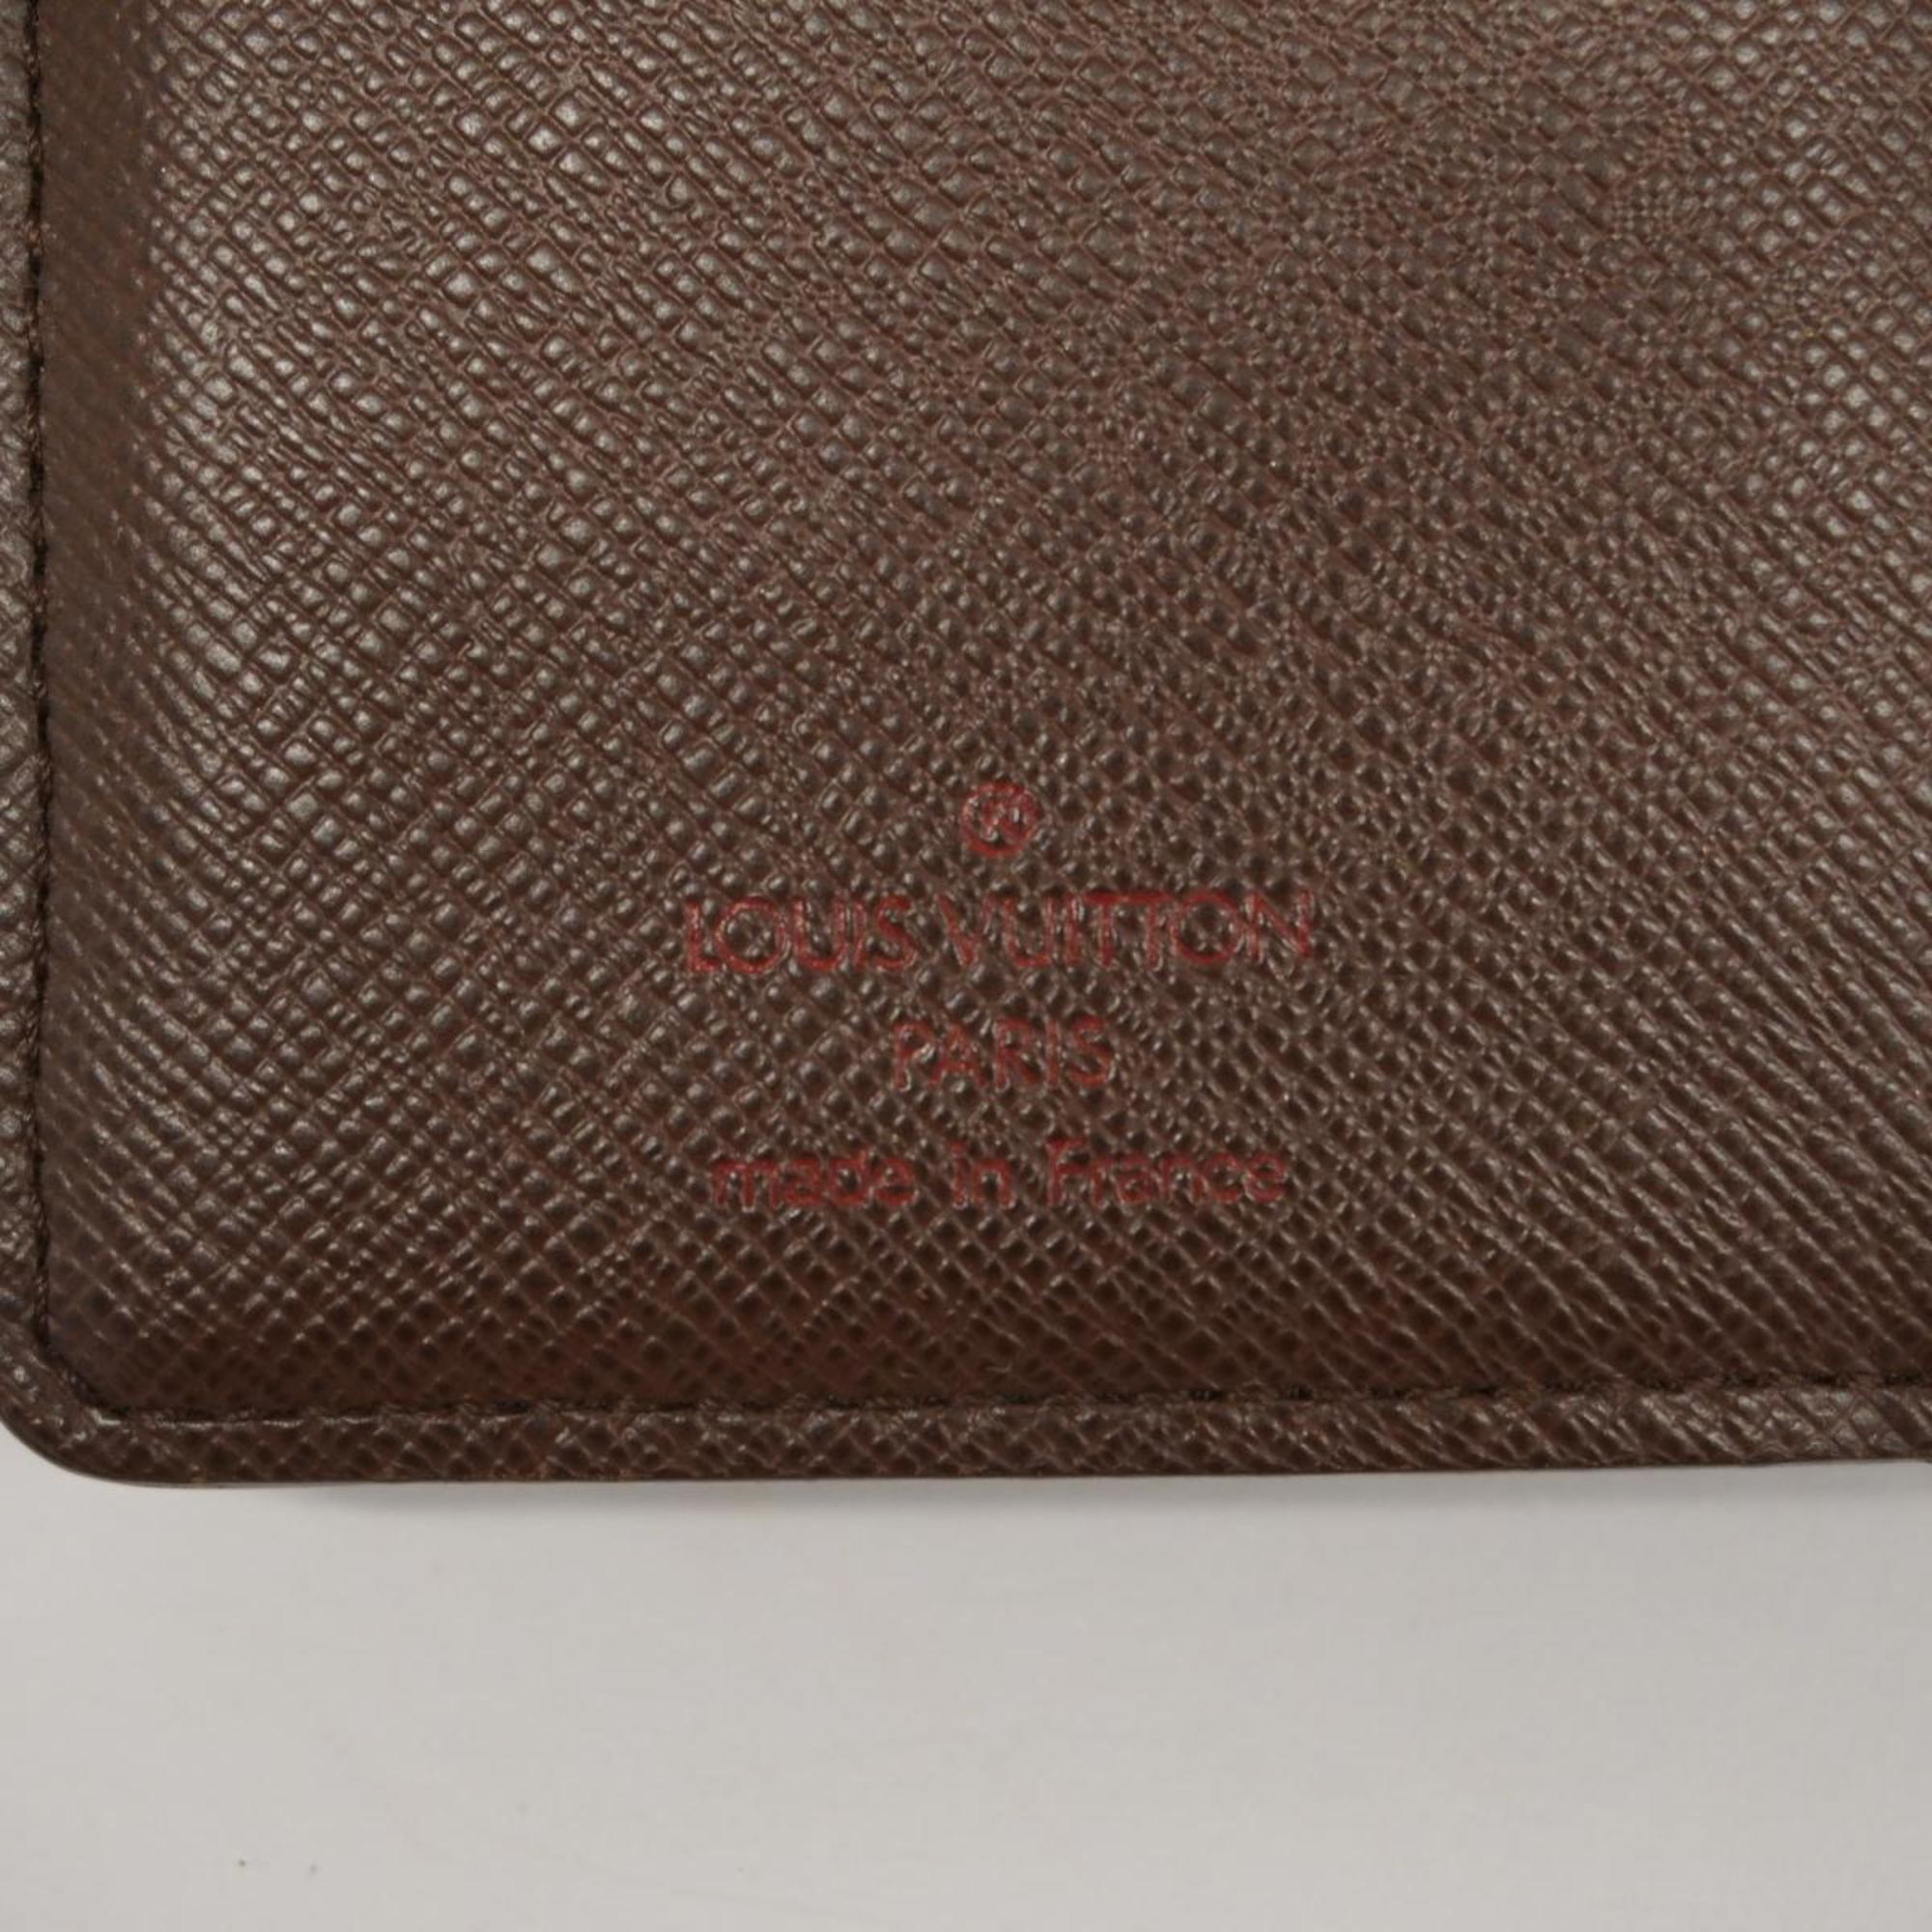 ルイ・ヴィトン(Louis Vuitton) ルイ・ヴィトン 財布 ダミエ ポルトフォイユヴィエノワ N61674 エベヌメンズ レディース